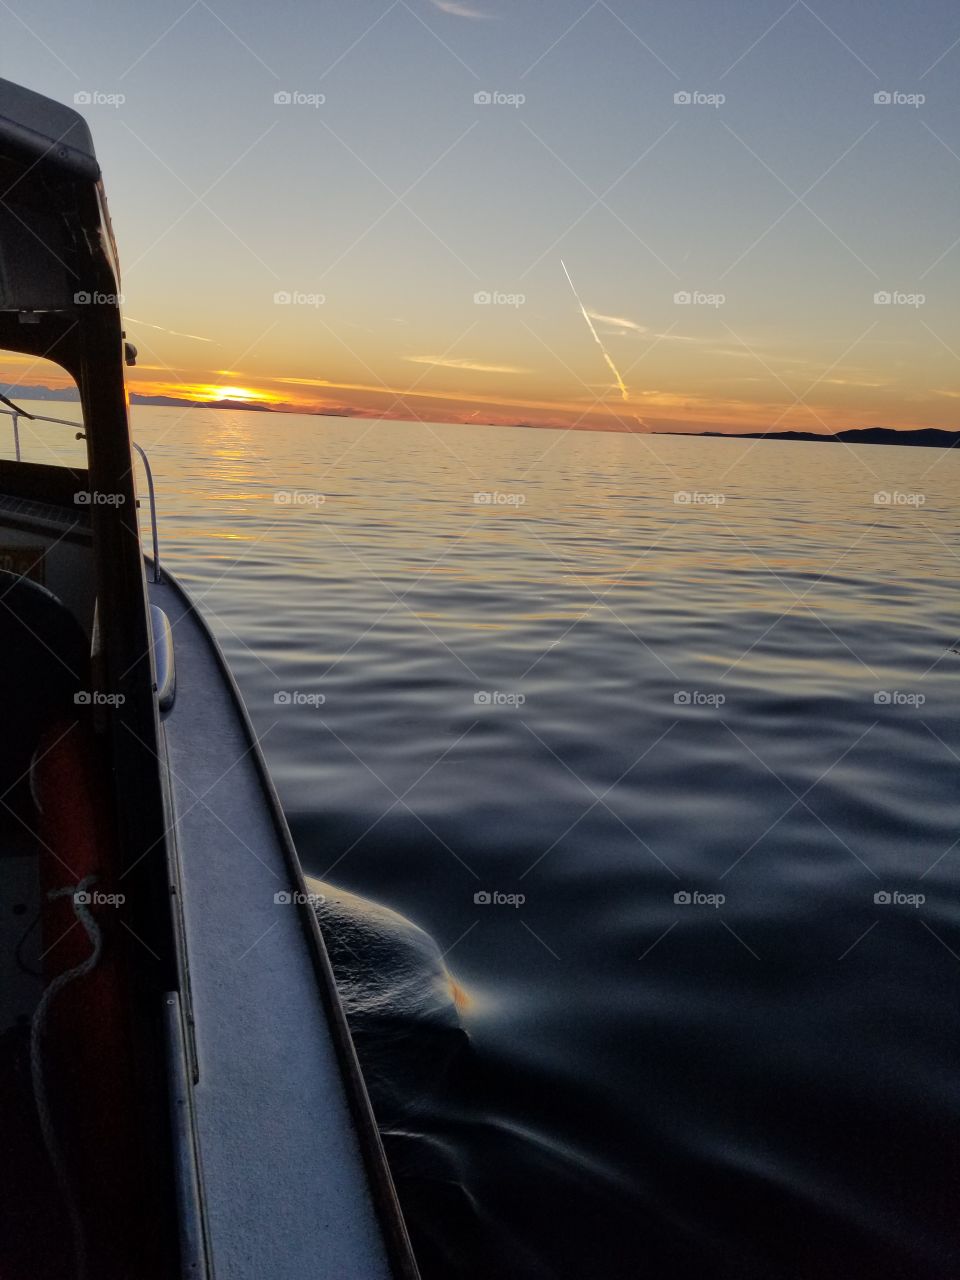 boating sunset 2